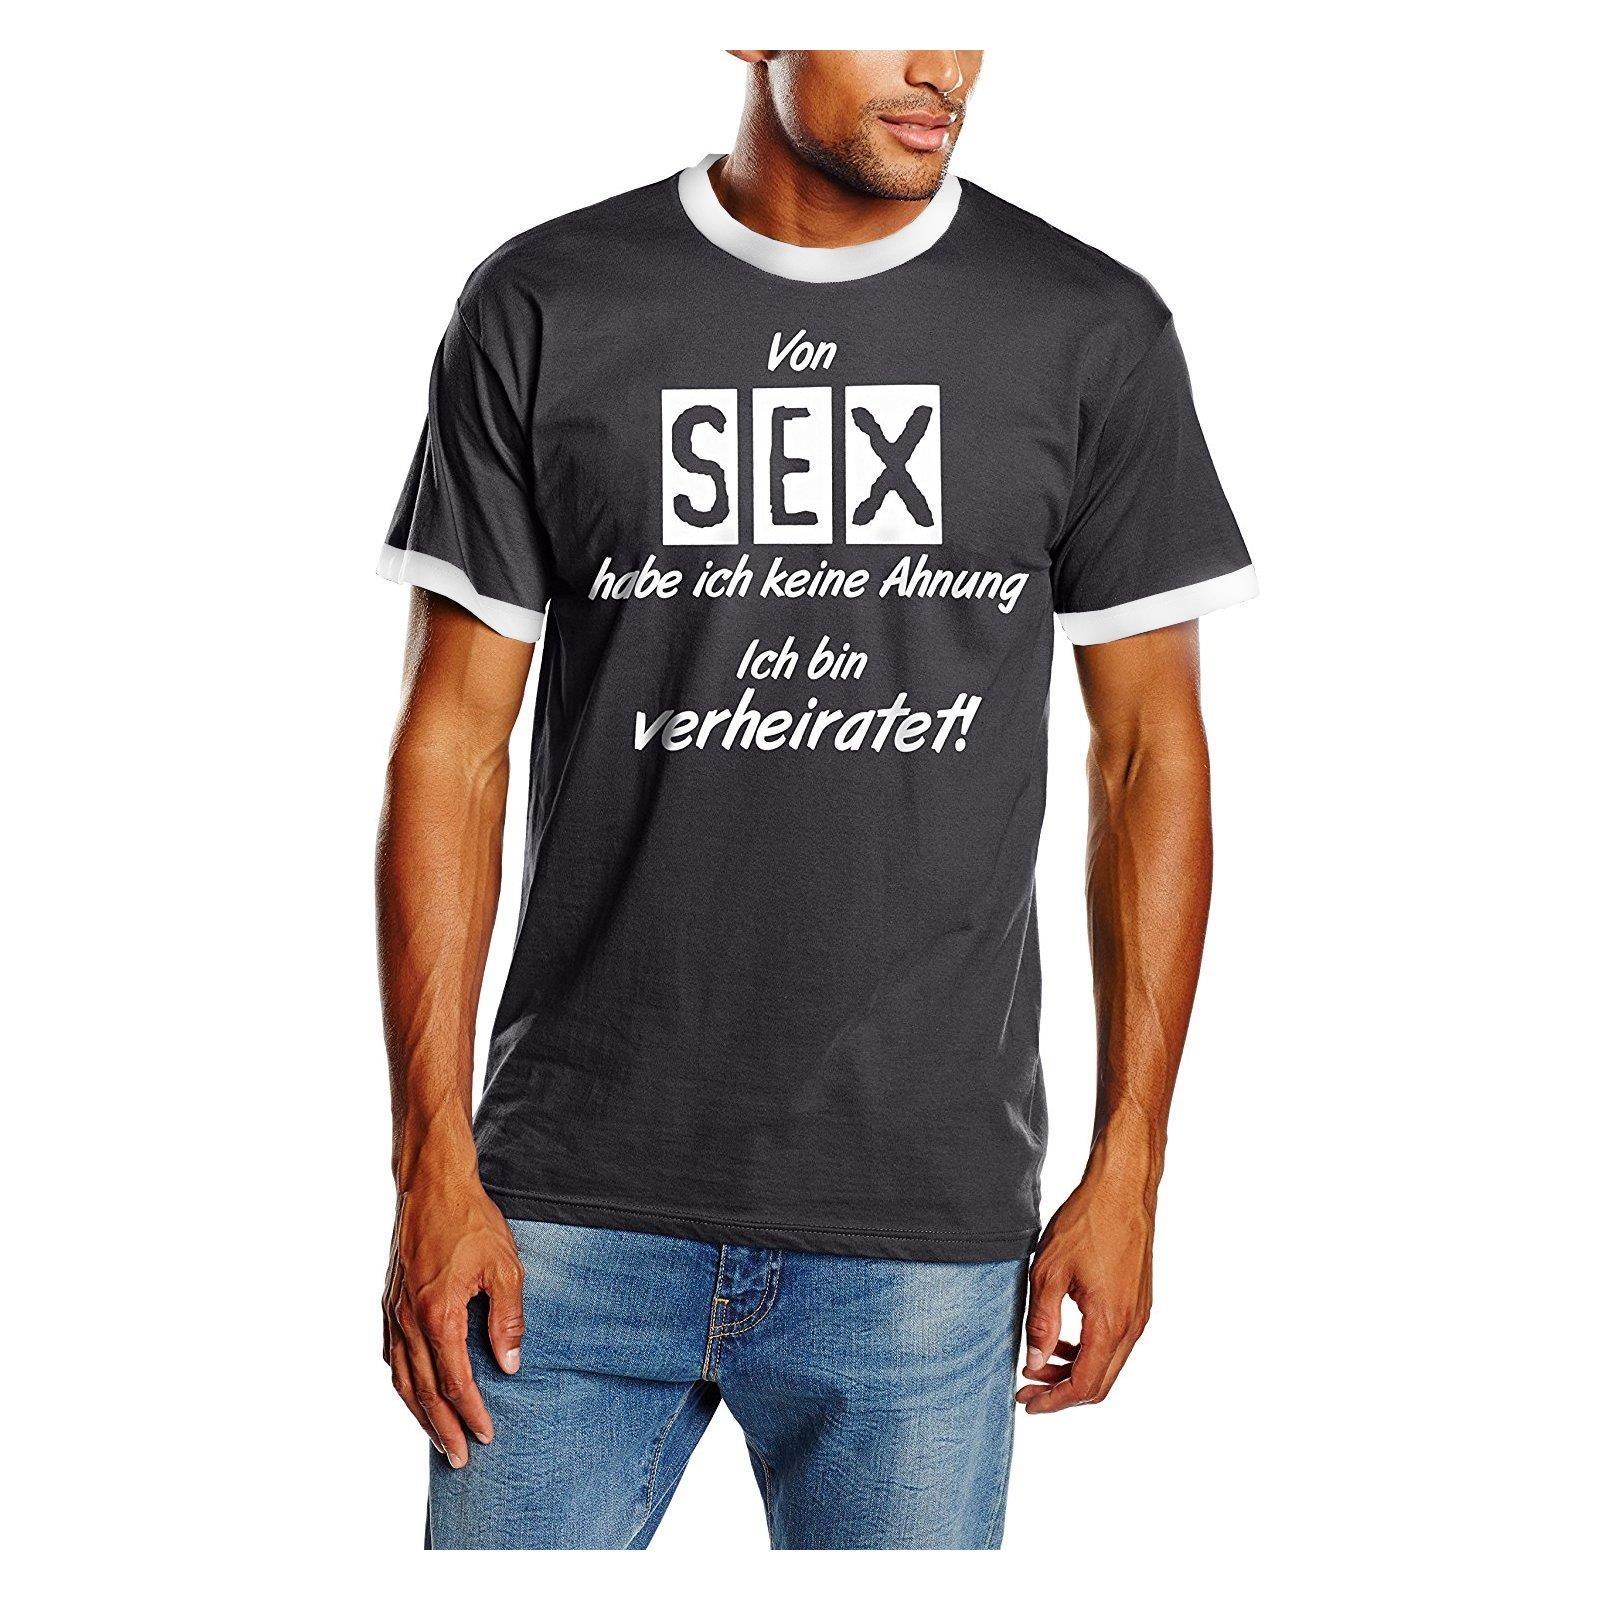 38+ T shirt witzige sprueche ideas in 2021 